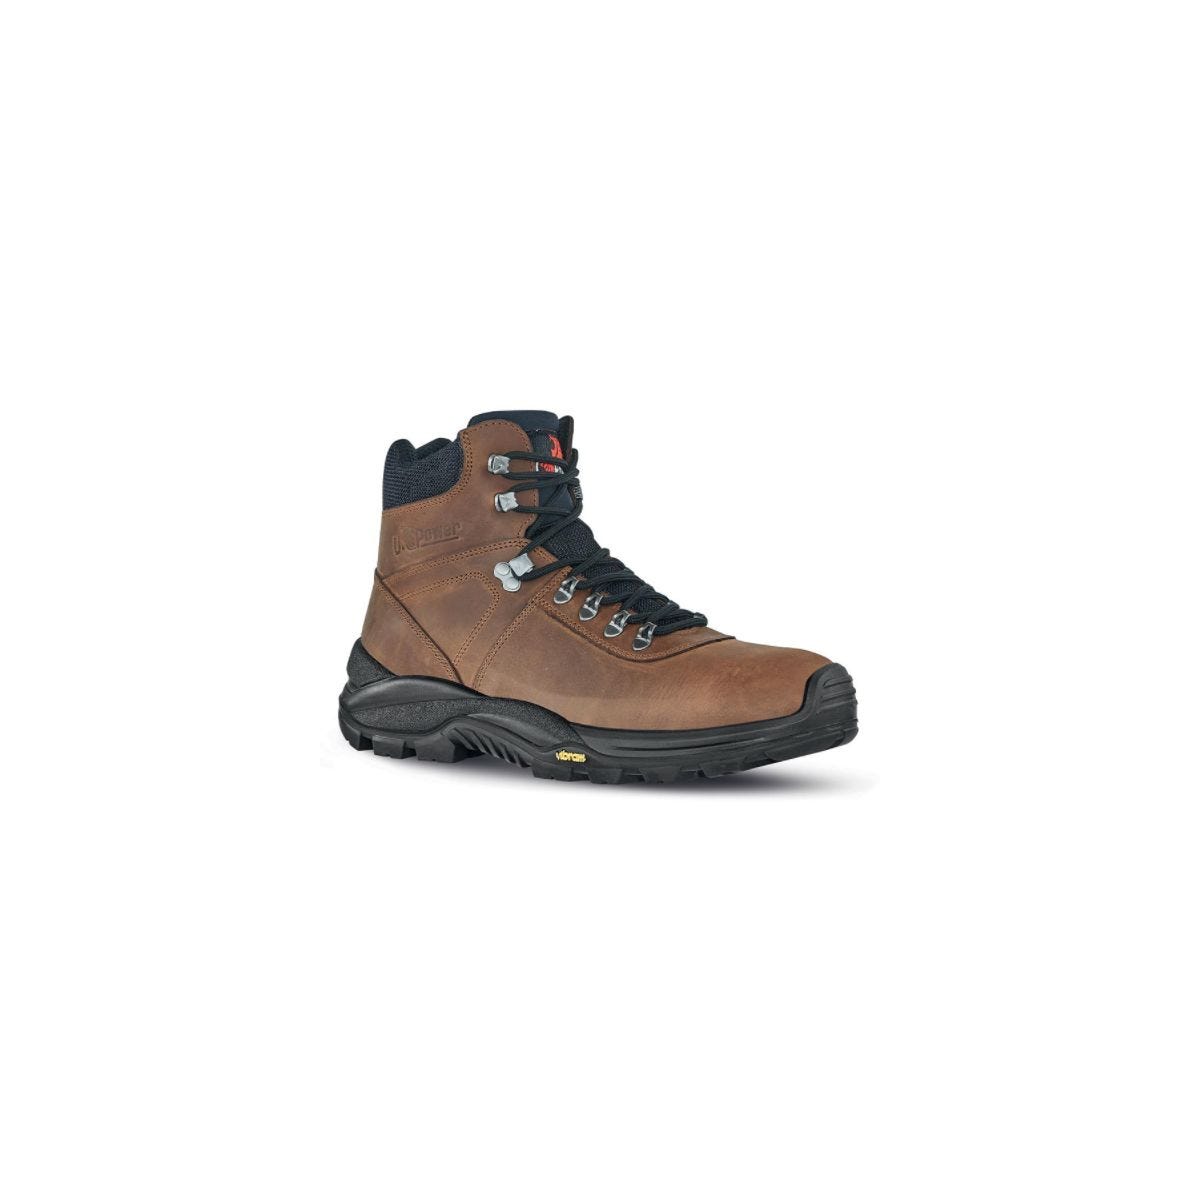 Chaussures de sécurité Trail S3 Marron - U-Power - Taille 43 0